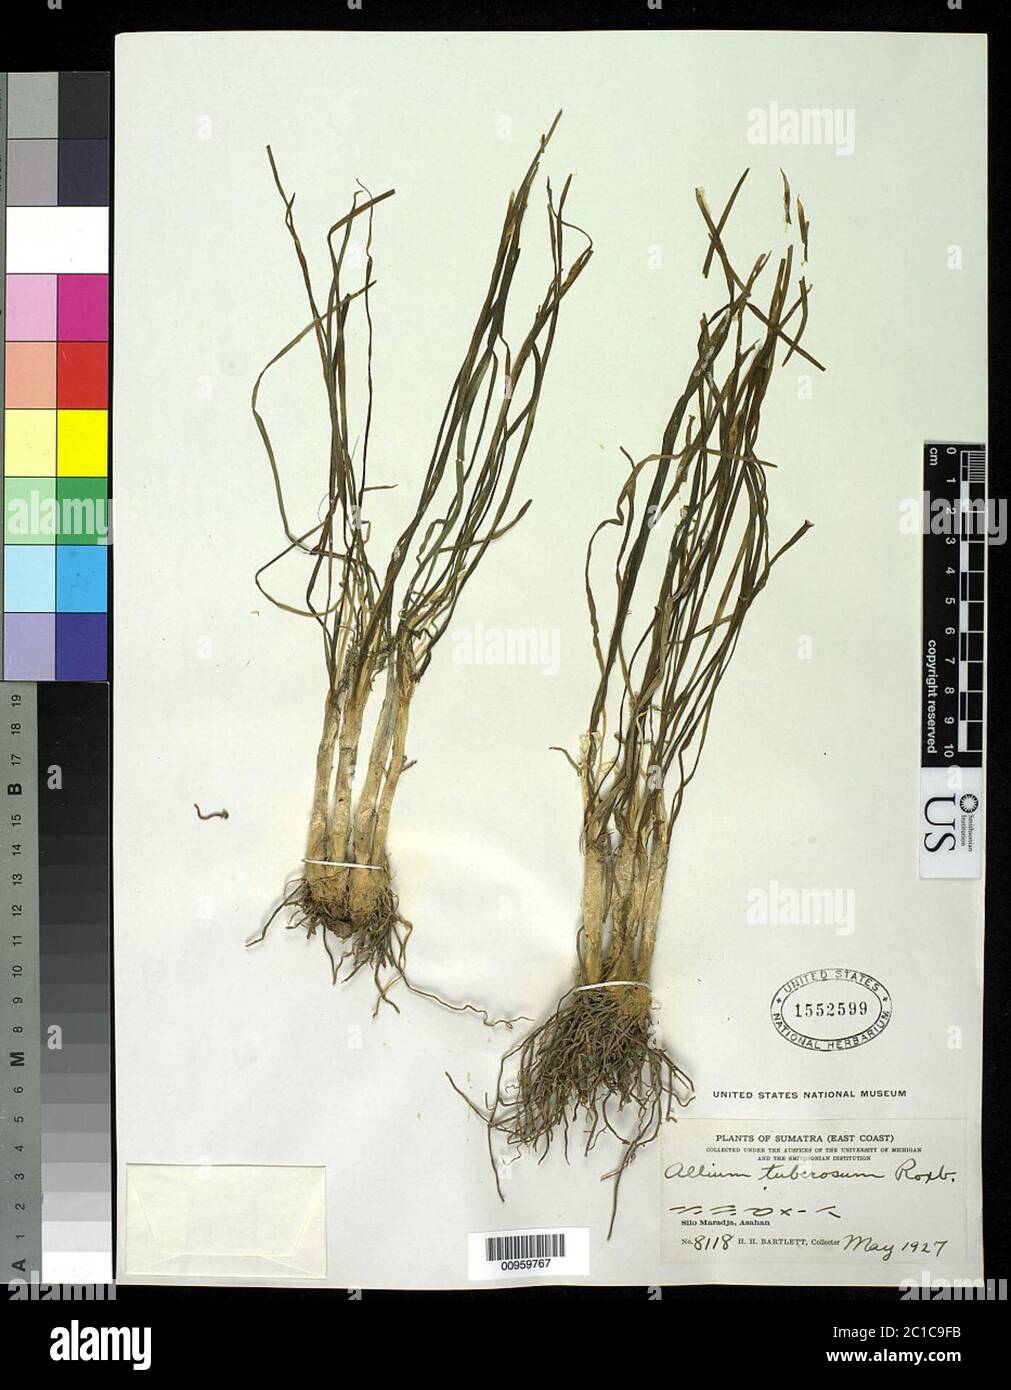 Allium tuberosum Rottler ex Spreng Allium tuberosum Rottler ex Spreng. Stock Photo